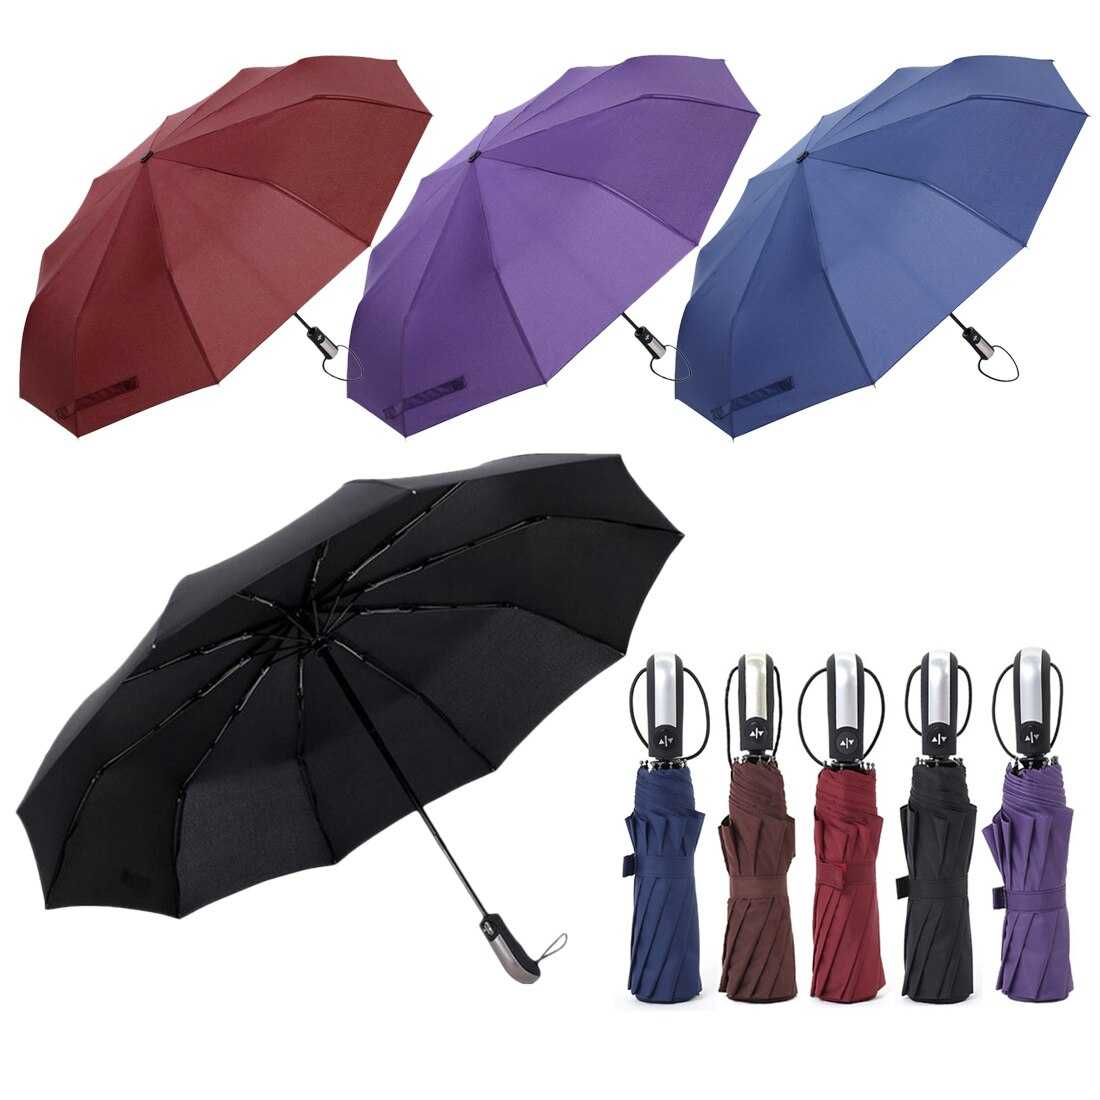 10 лучших брендов женских зонтов - рейтинг 2021